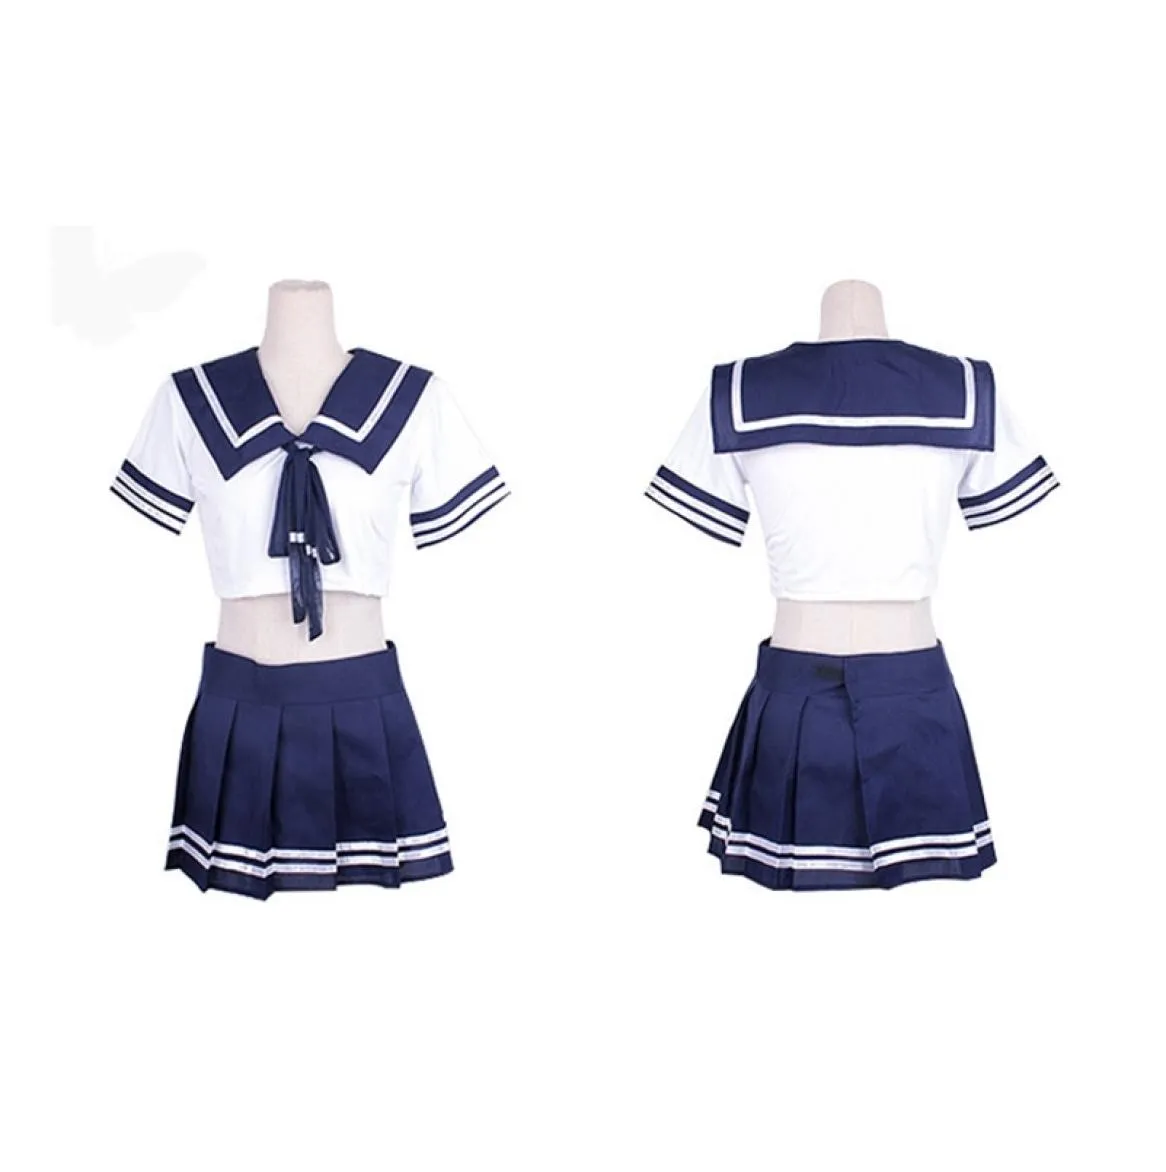 4xl artı okul öğrencisi üniforma Japon kız öğrenci erotik hizmetçi kostüm seks mini etek kıyafeti seksi cosplay iç çamaşırı egzotik 214561573